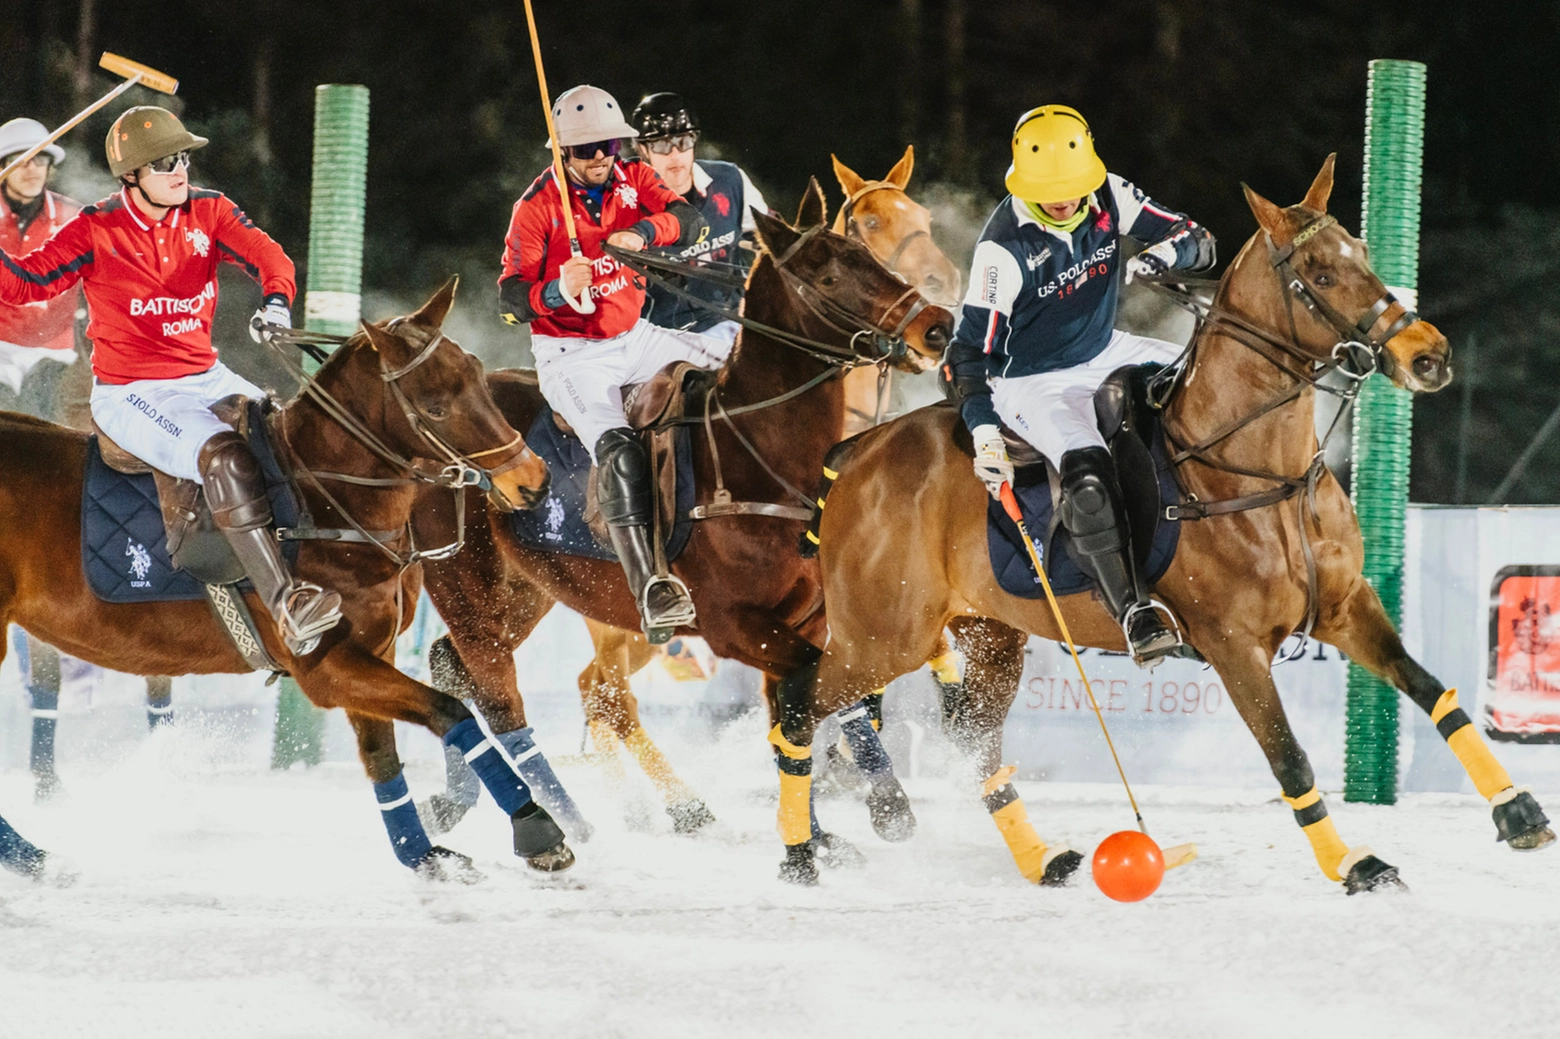 Una partita dell'Italia Polo Challenge sul campo innevato